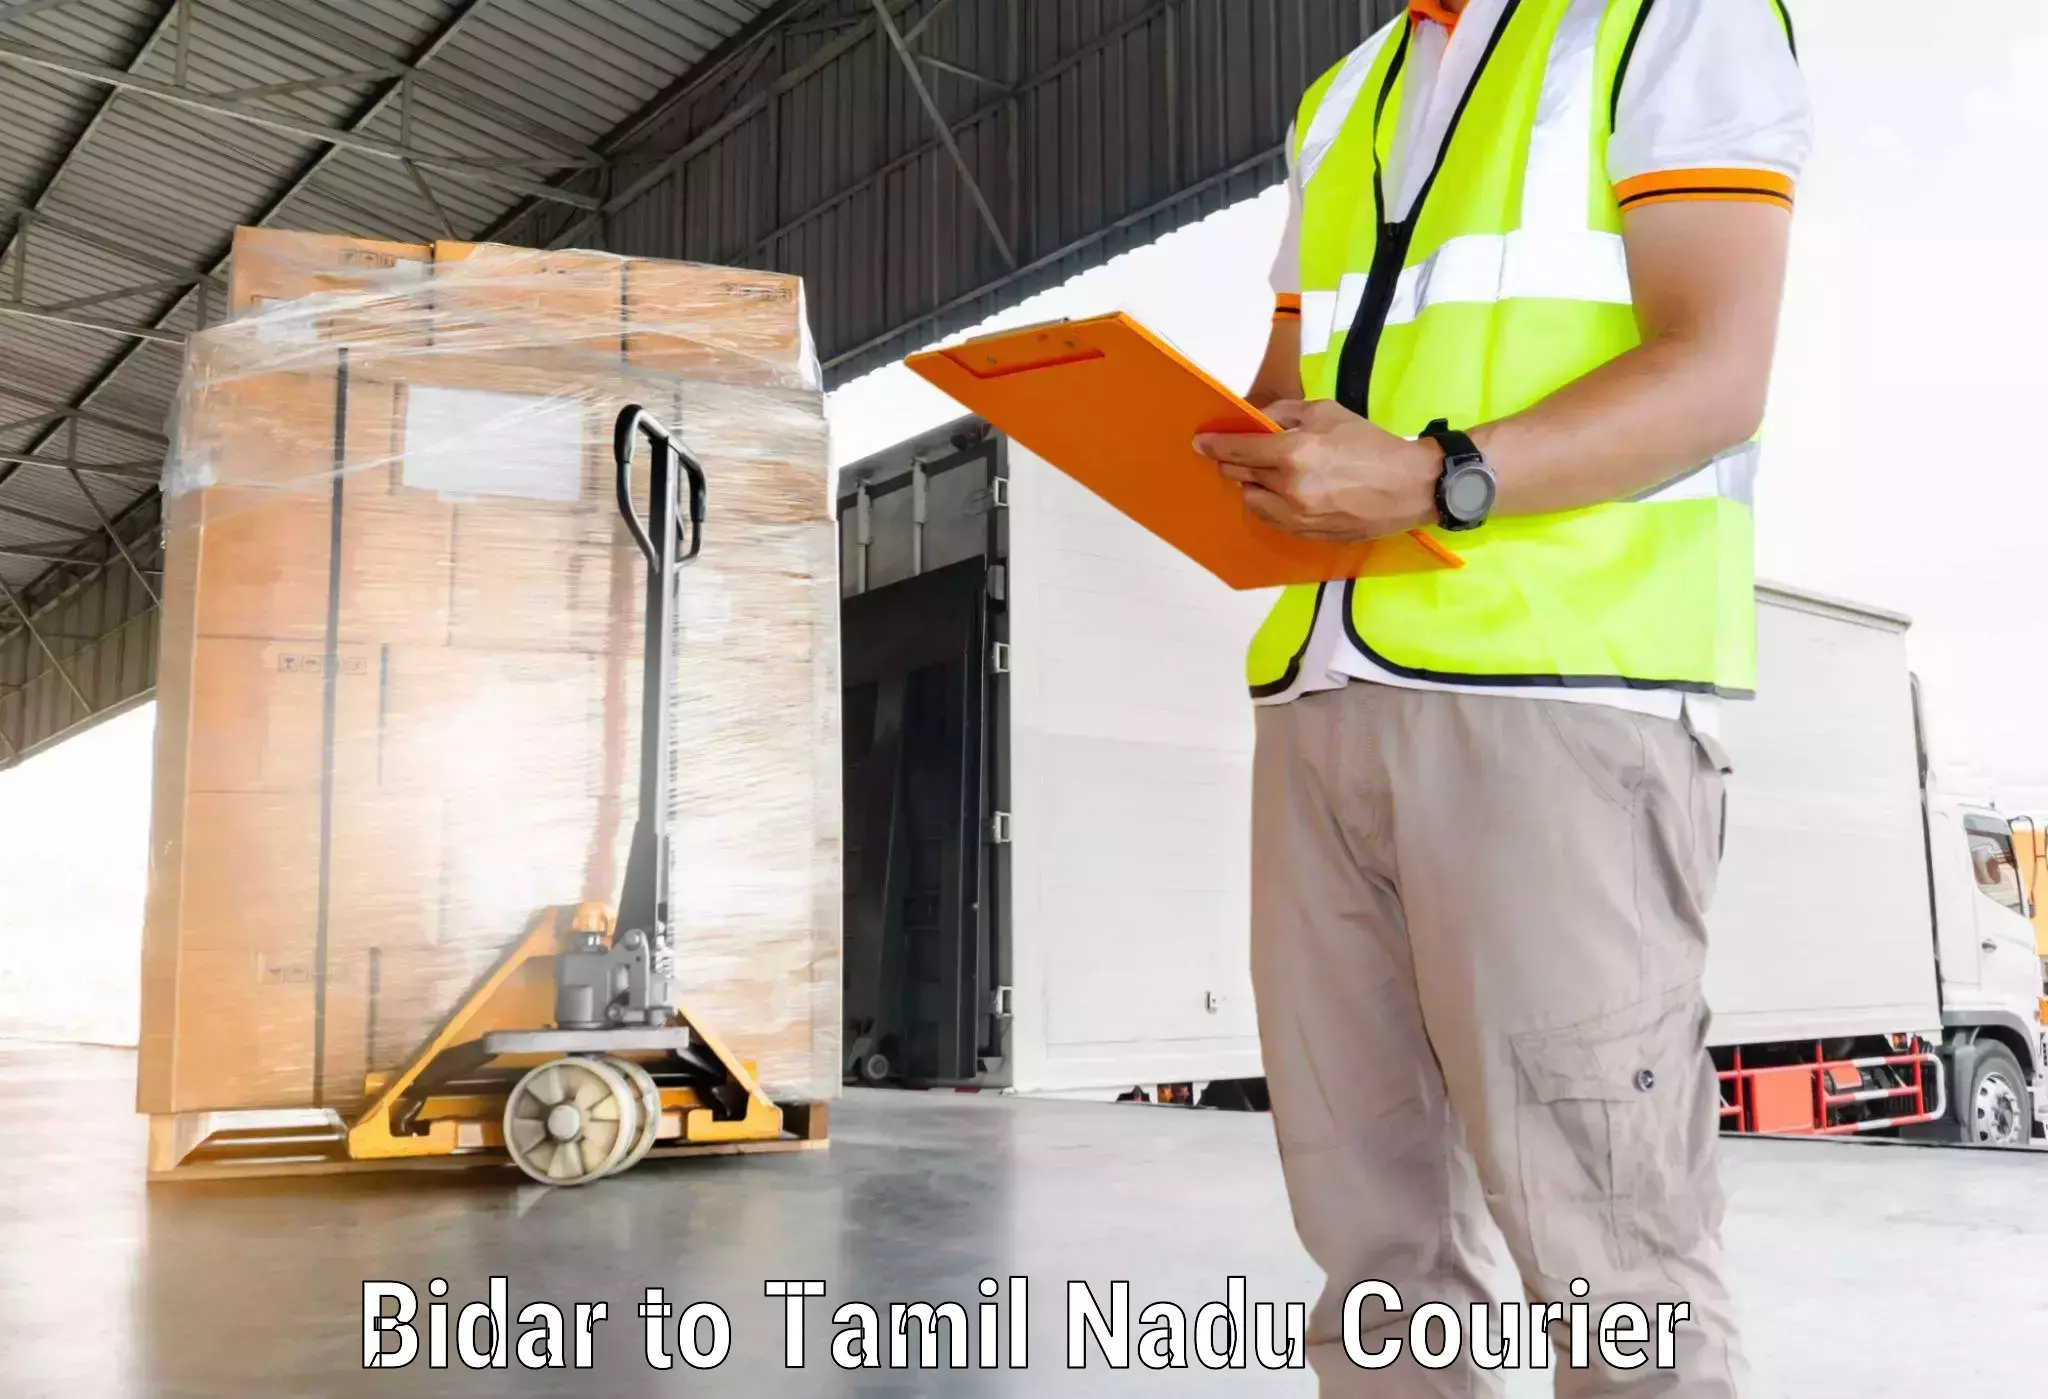 Expedited shipping methods Bidar to Tiruturaipundi